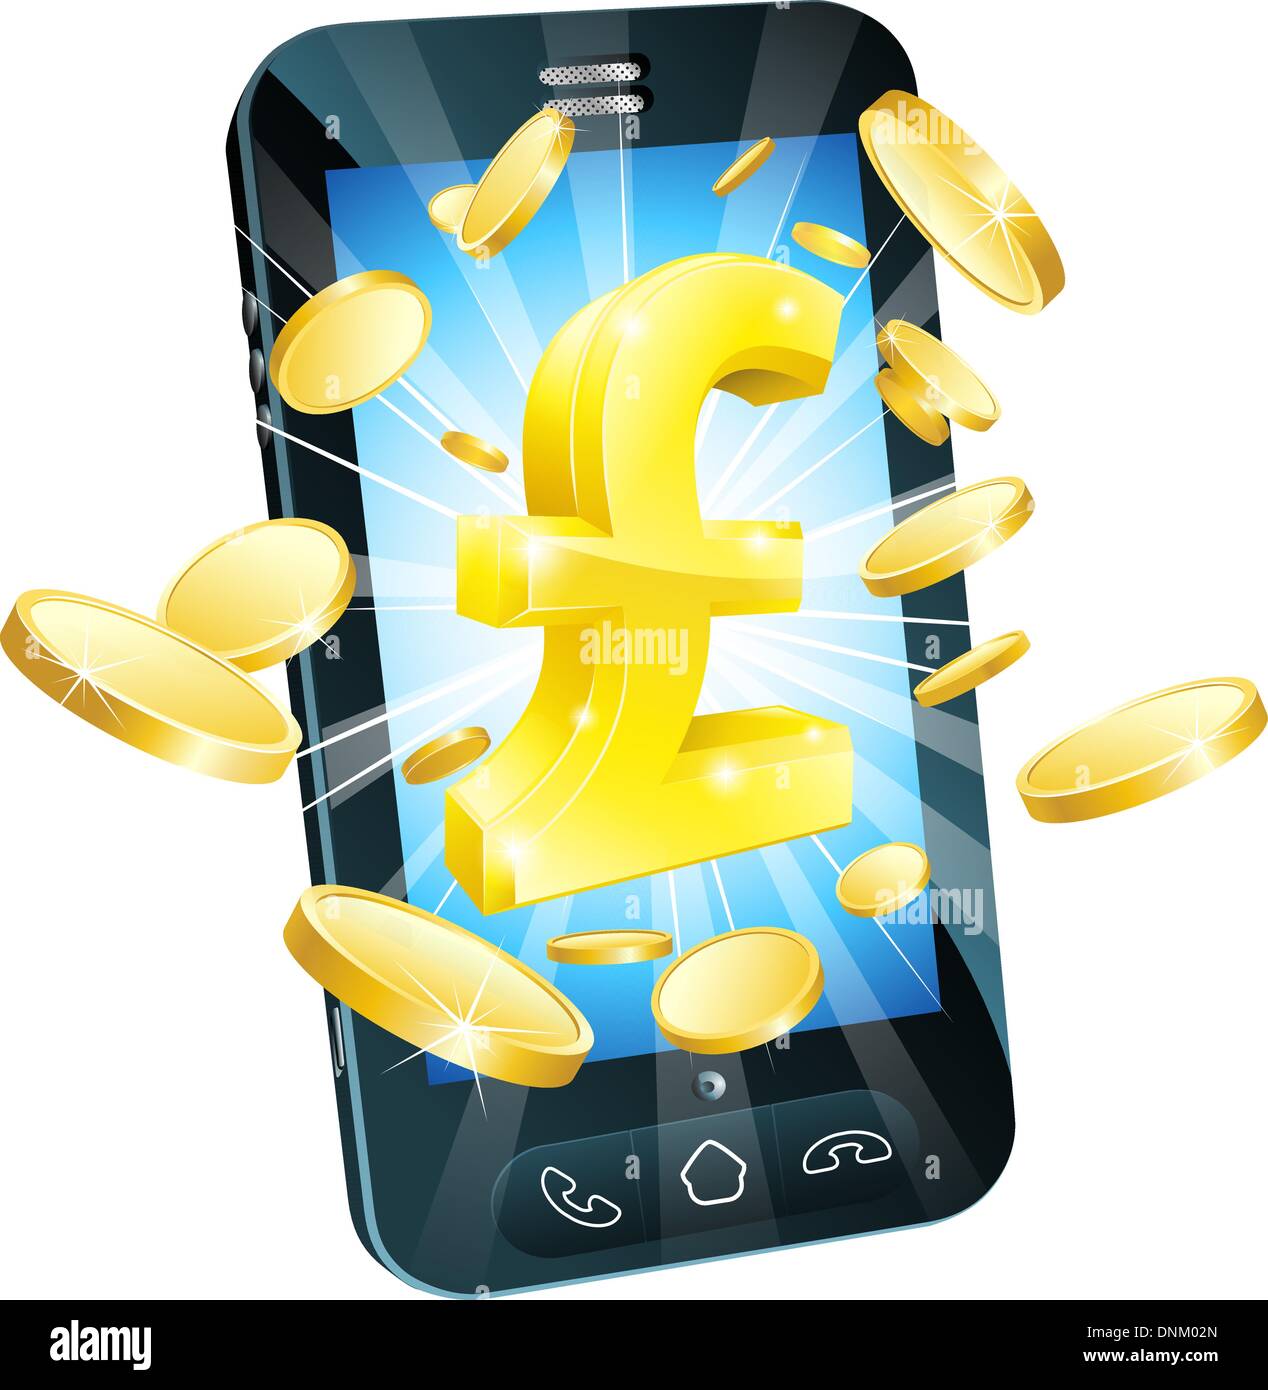 Pfund Geld Handy Konzept Illustration des Handy mit Münzen und gold Raute Stock Vektor